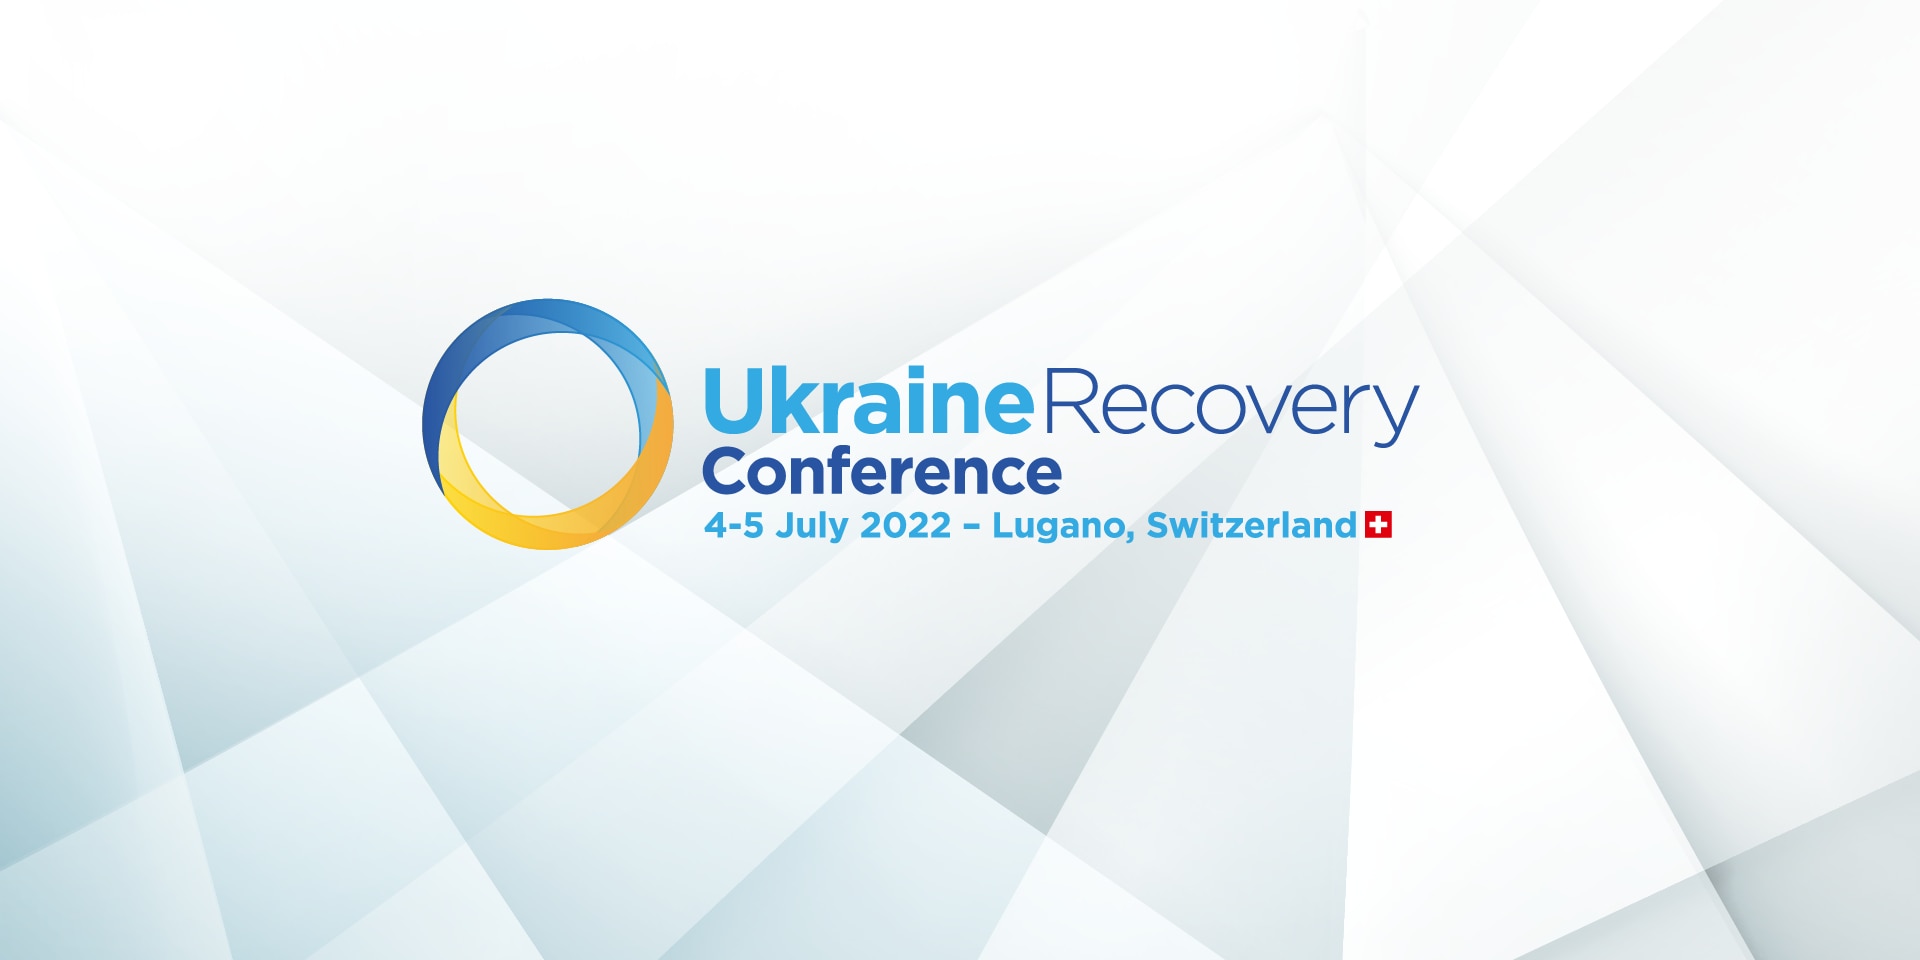 Il logo della Ukraine Recovery Conference 2022 di Lugano si compone di un cerchio giallo-blu e di informazioni sull’evento in caratteri blu.